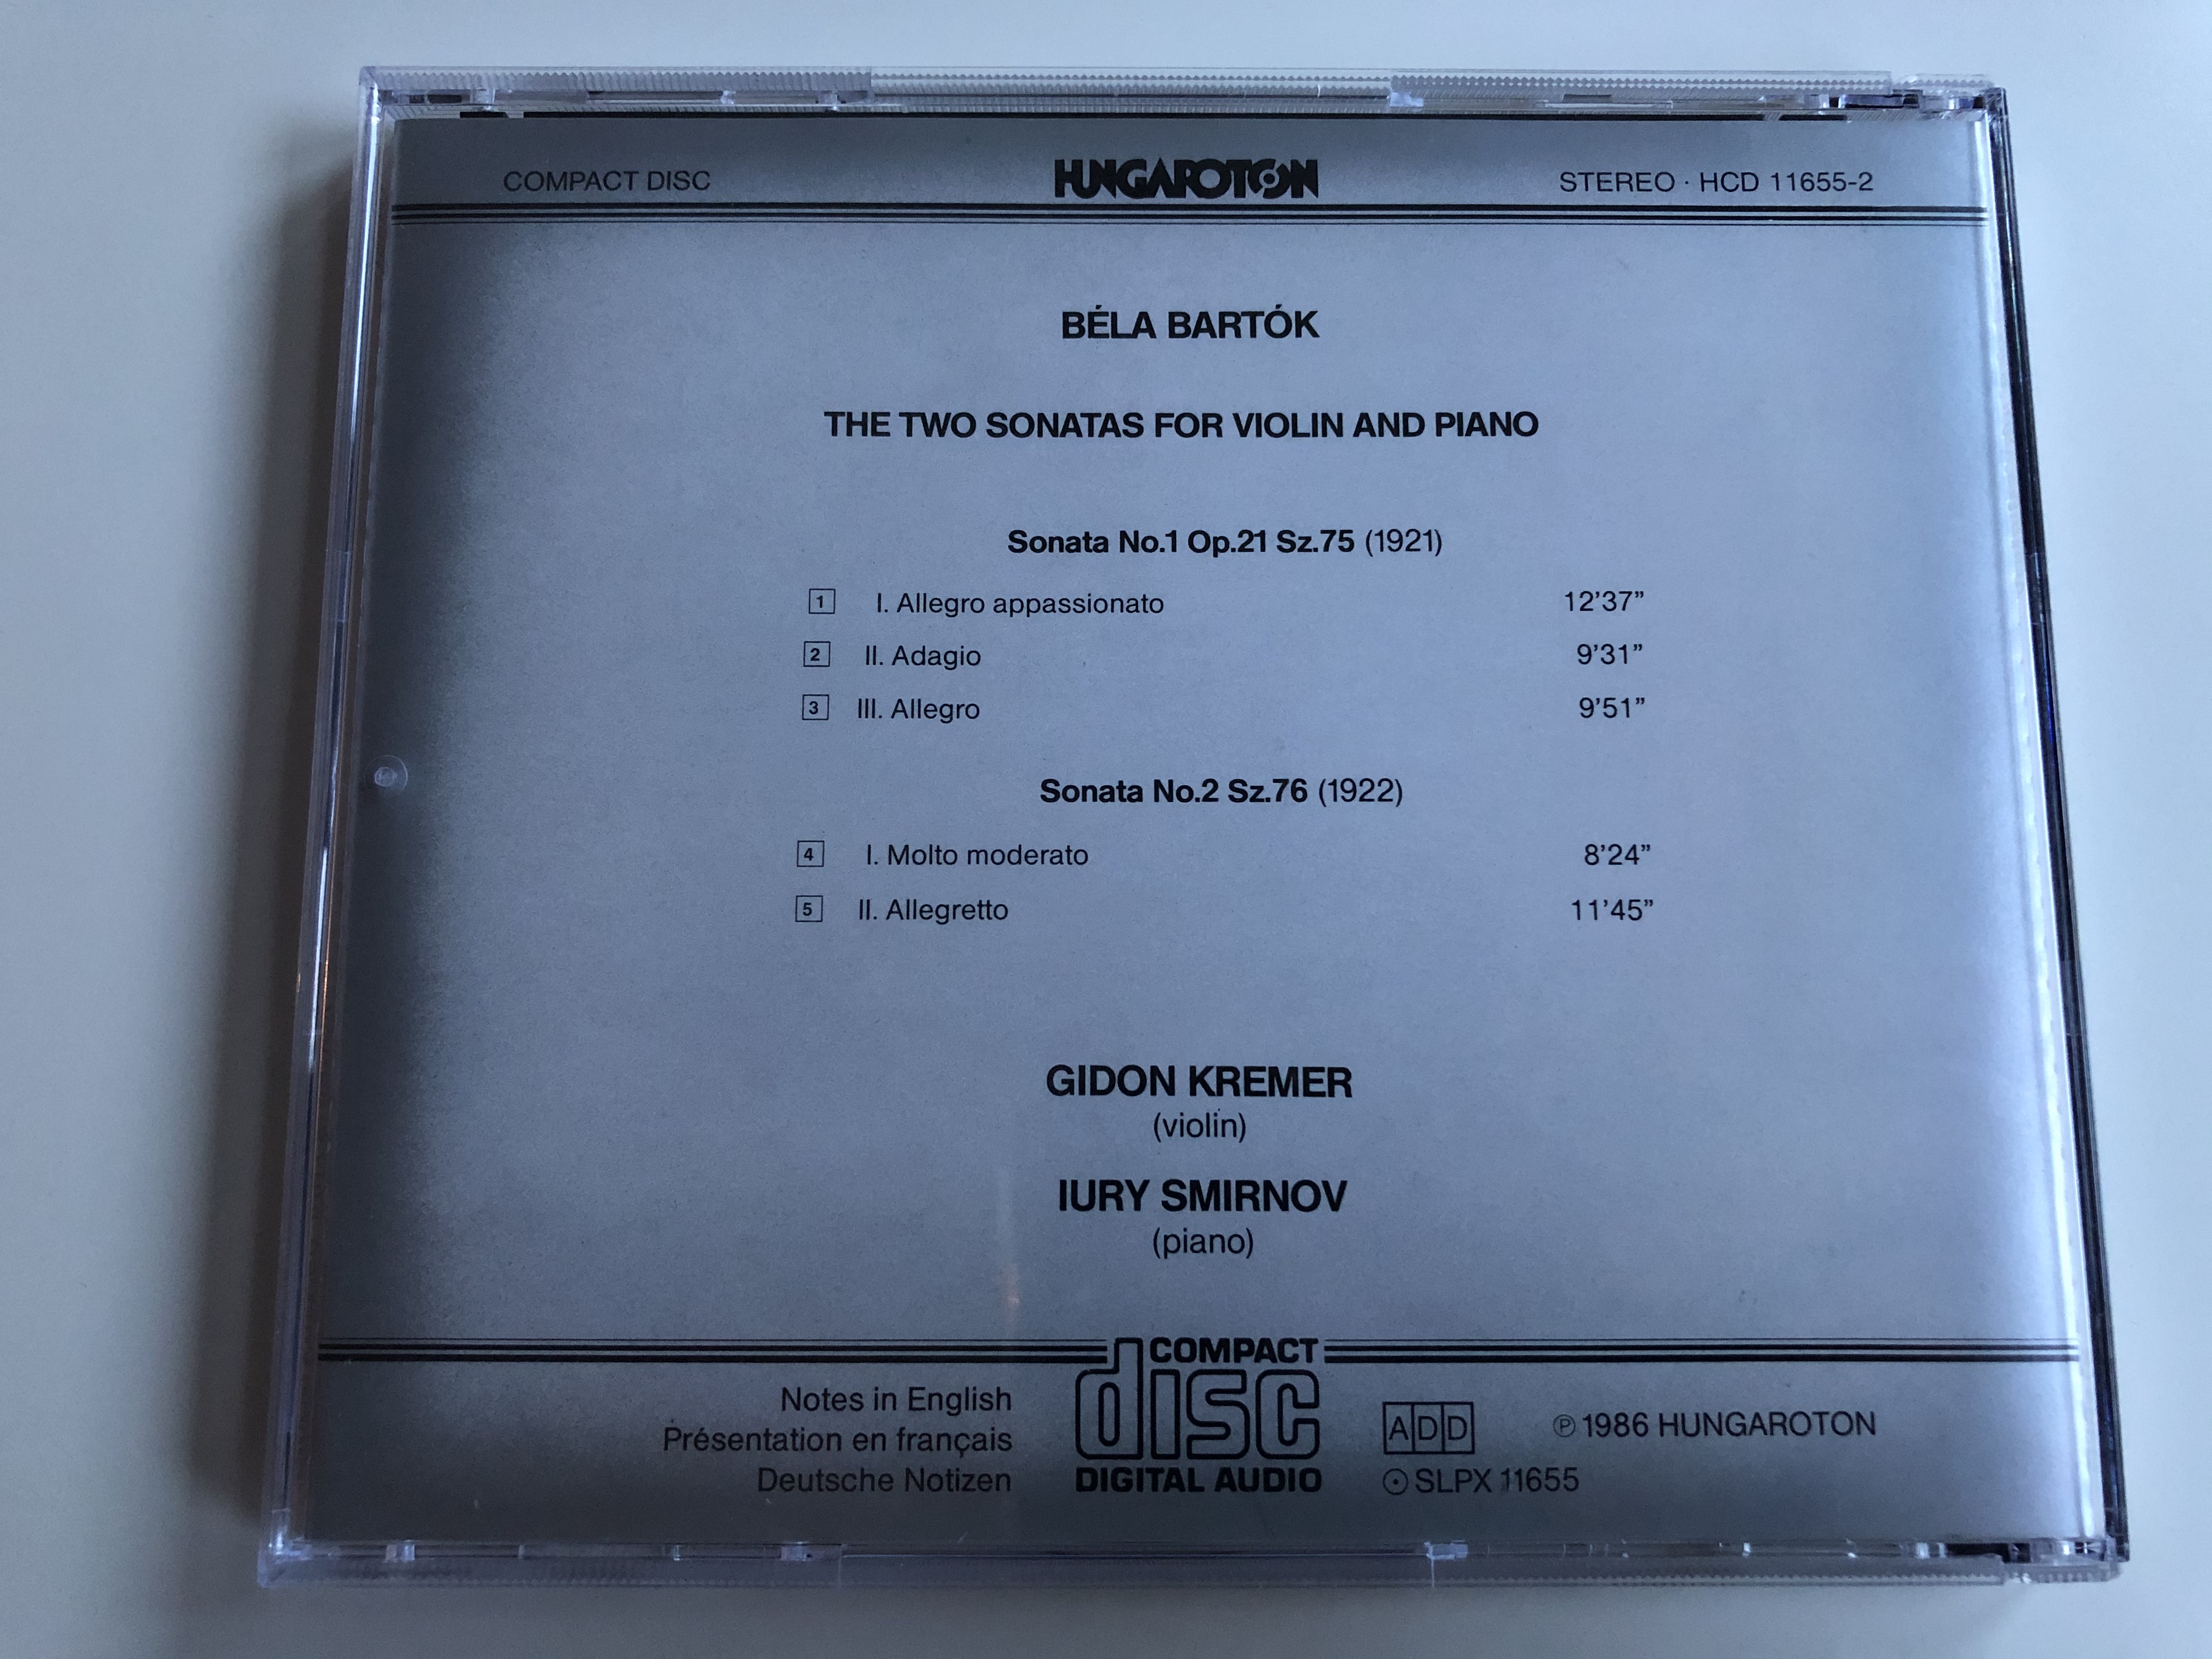 bart-k-the-two-sonatas-for-violin-and-piano-gidon-kremer-iury-smirnov-hungaroton-audio-cd-1986-stereo-hcd-11655-2-8-.jpg